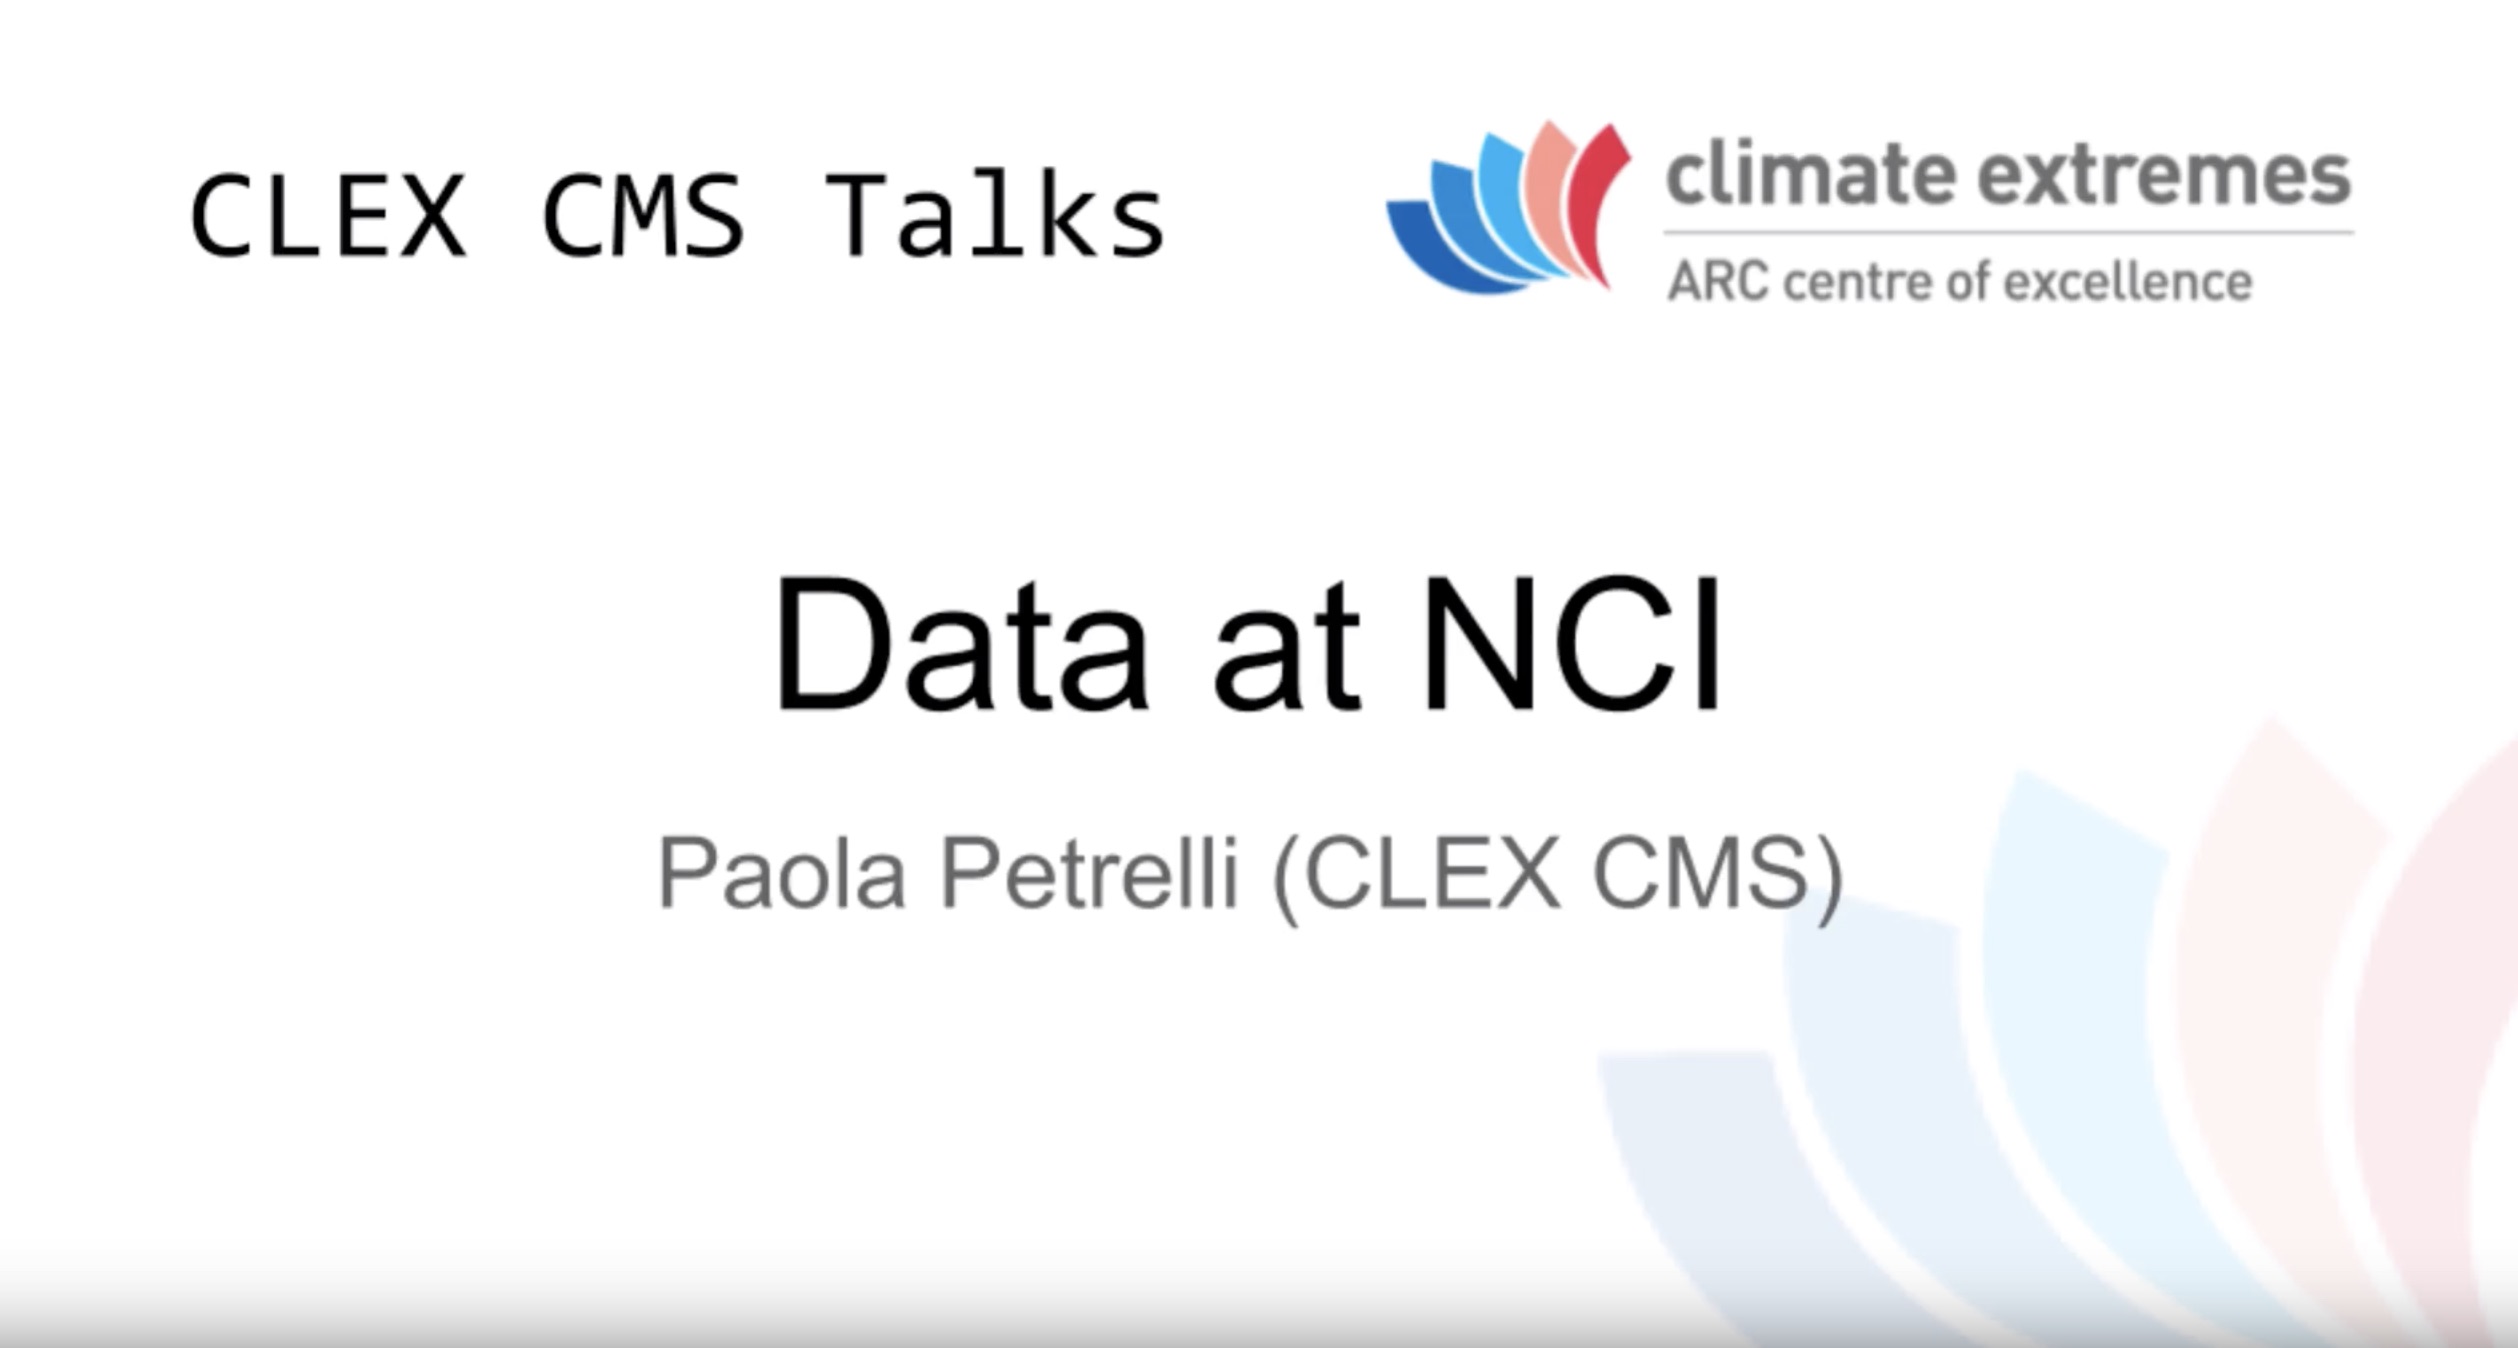 CMS talks: Data at NCI